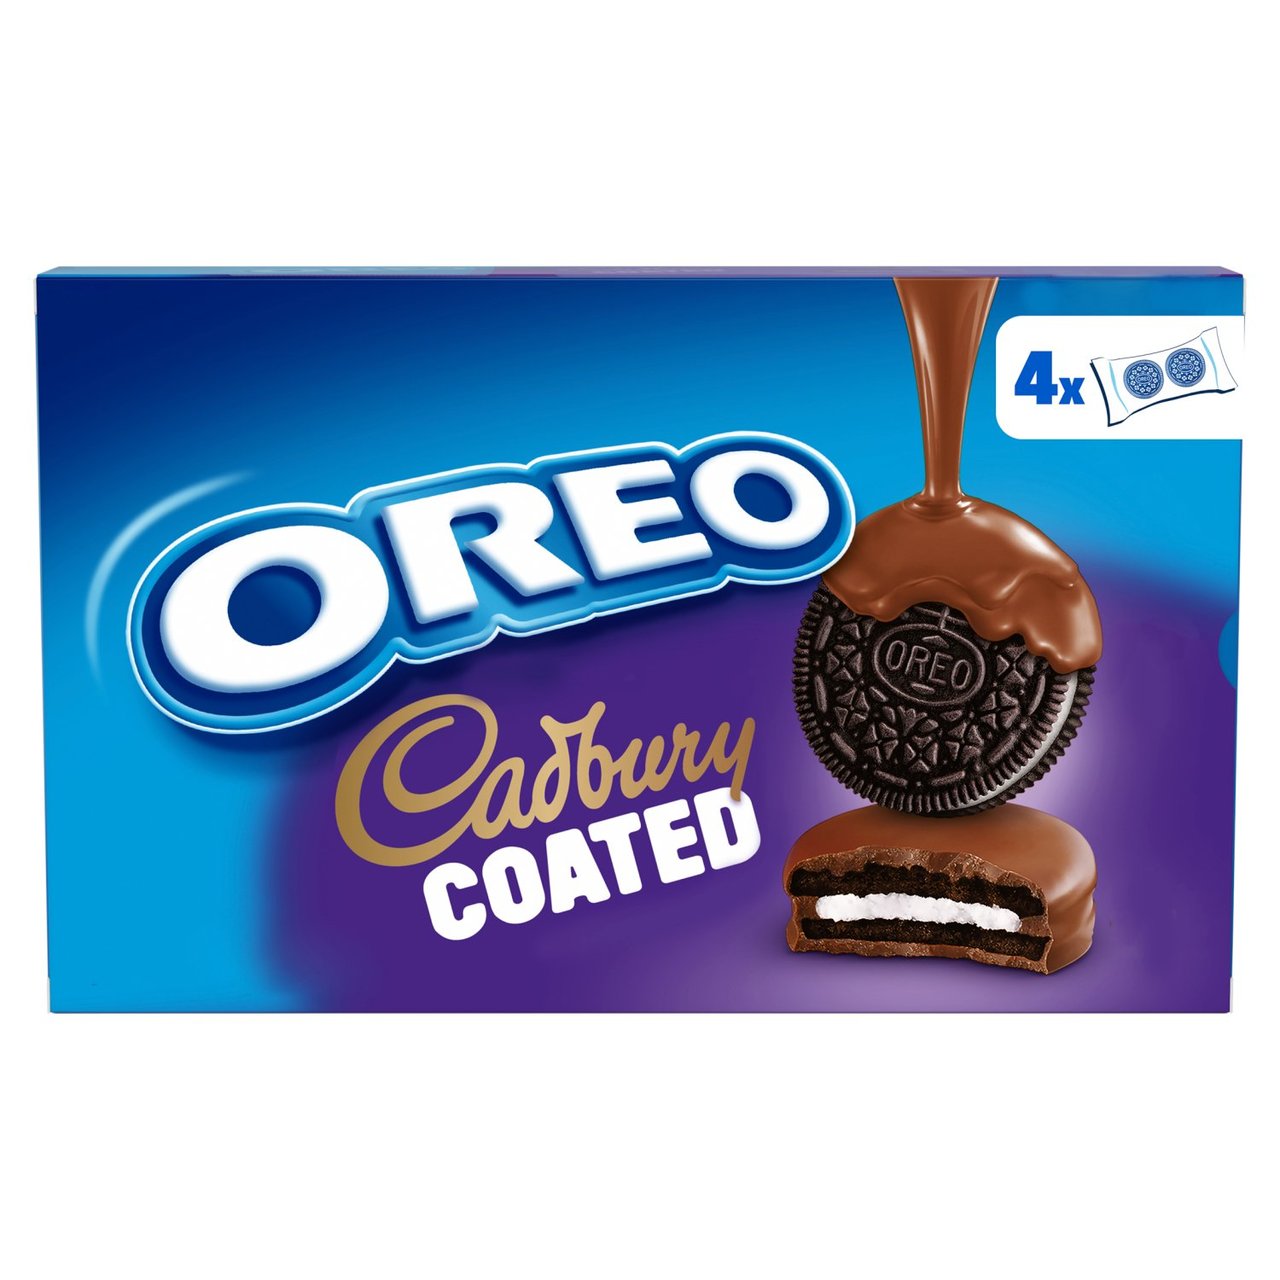 Oreo Cadbury Chocolate Coated Biscuits - HelloSupermarket